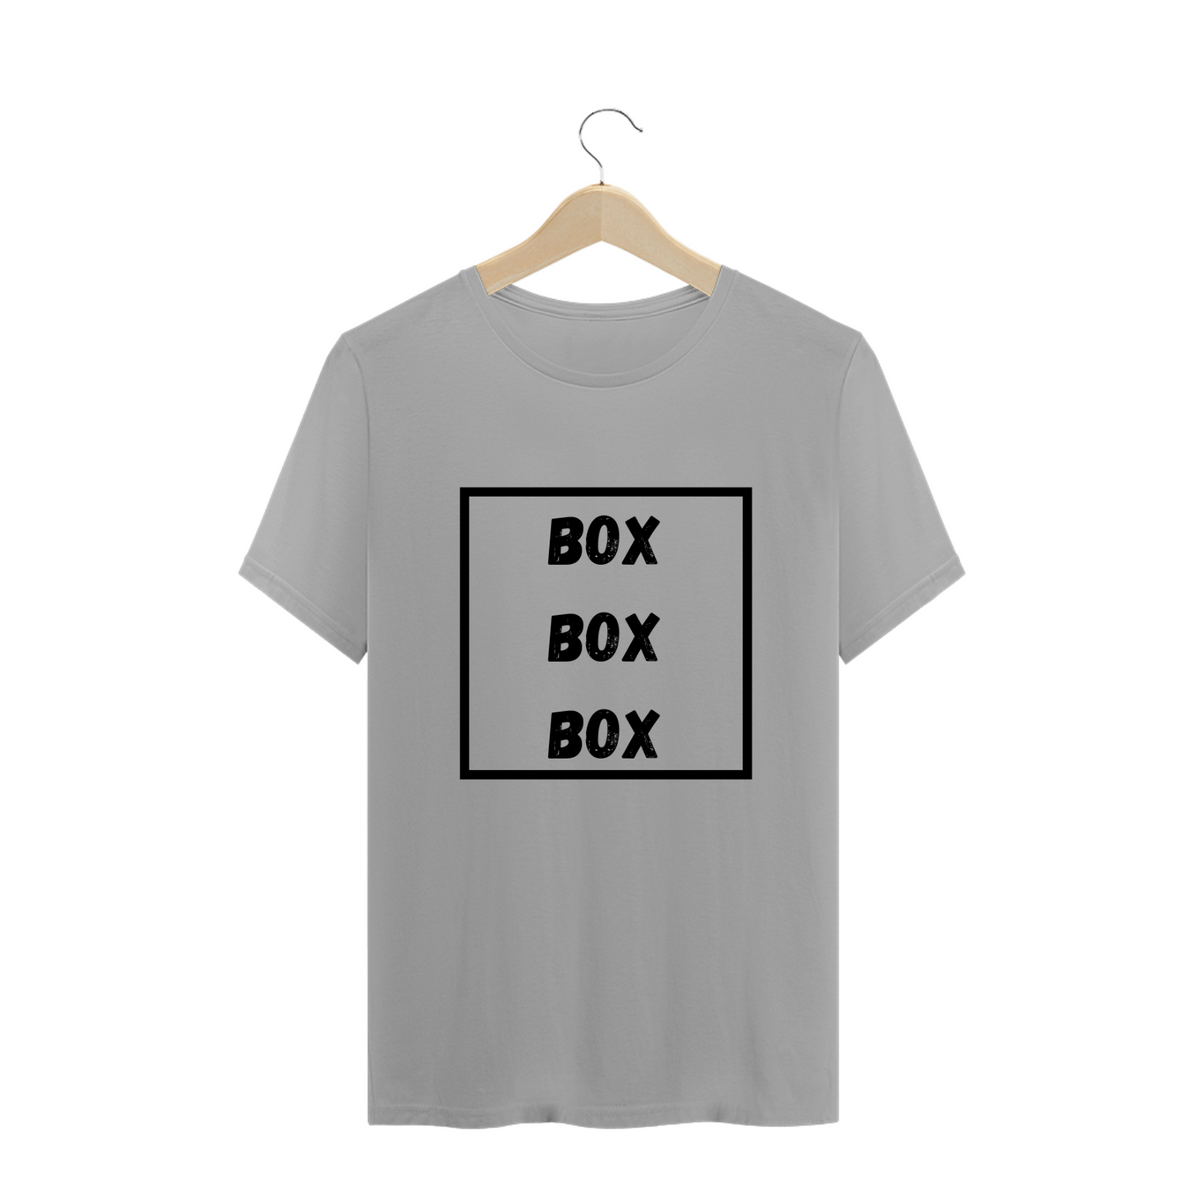 Nome do produto: BOX BOX BOX